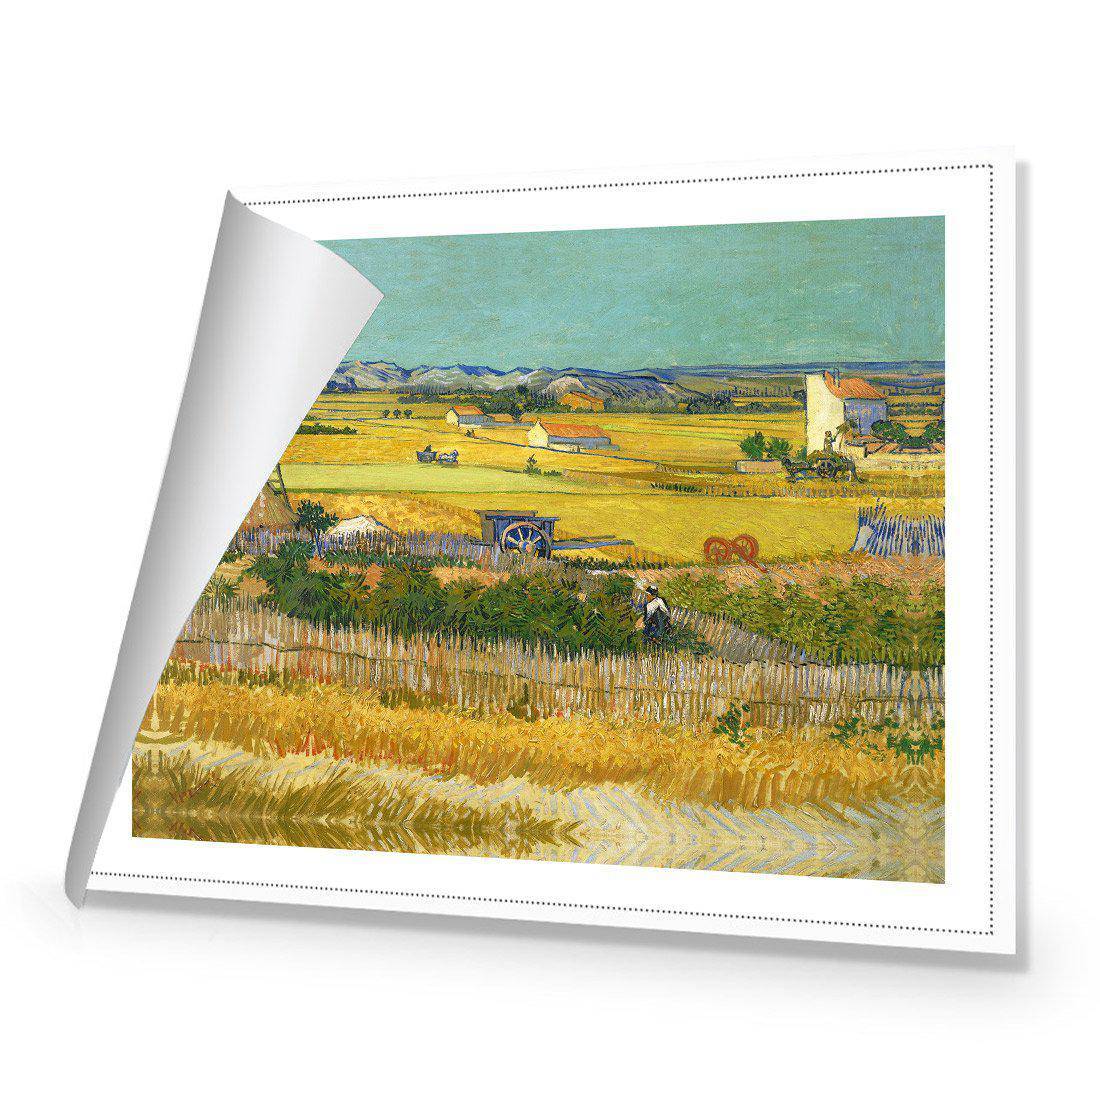 Harvest - Van Gogh Canvas Art-Canvas-Wall Art Designs-45x30cm-Rolled Canvas-Wall Art Designs